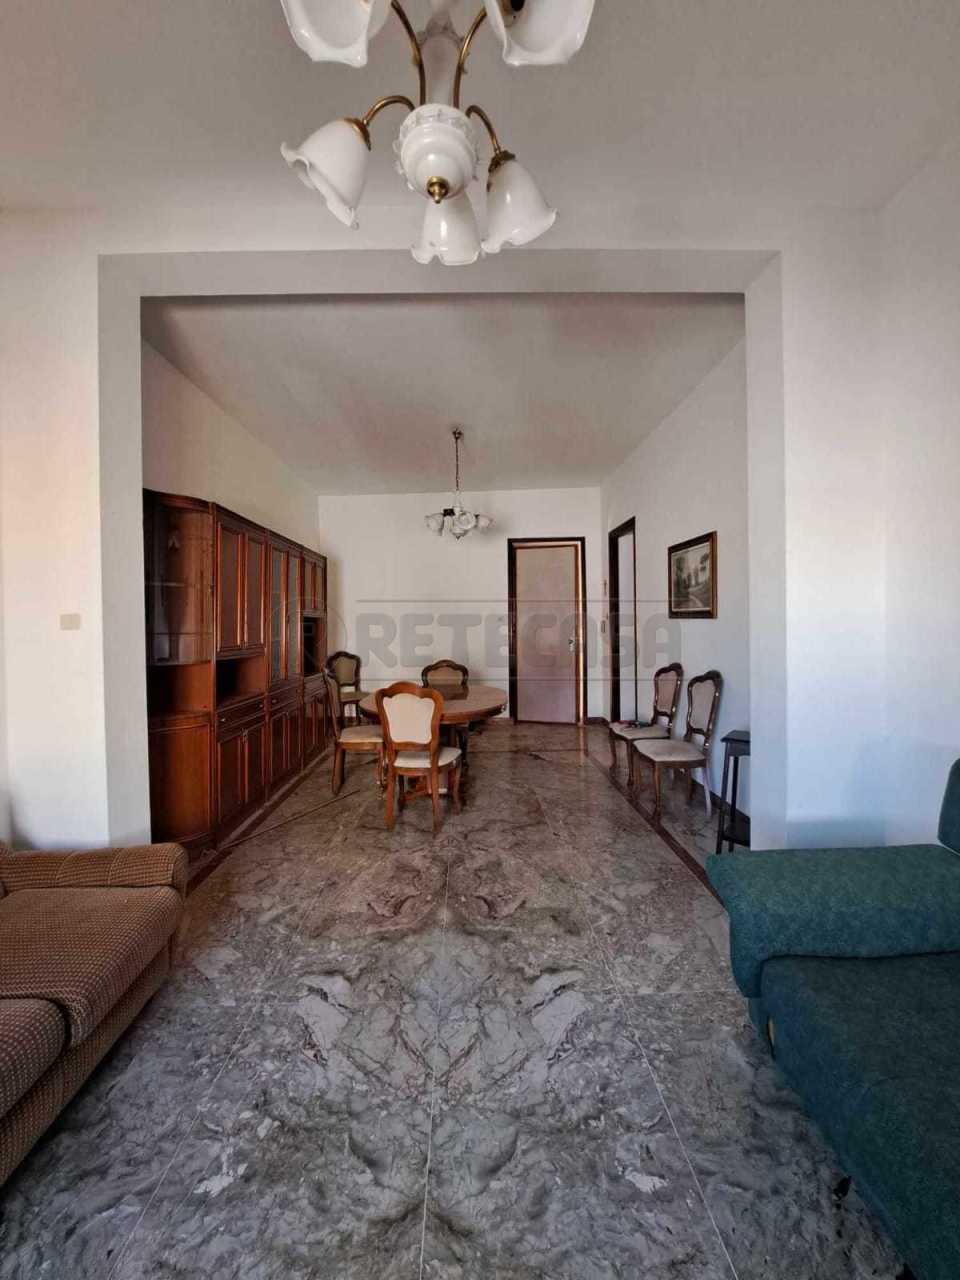 Appartamento in vendita a Pantelleria, 6 locali, prezzo € 90.000 | PortaleAgenzieImmobiliari.it